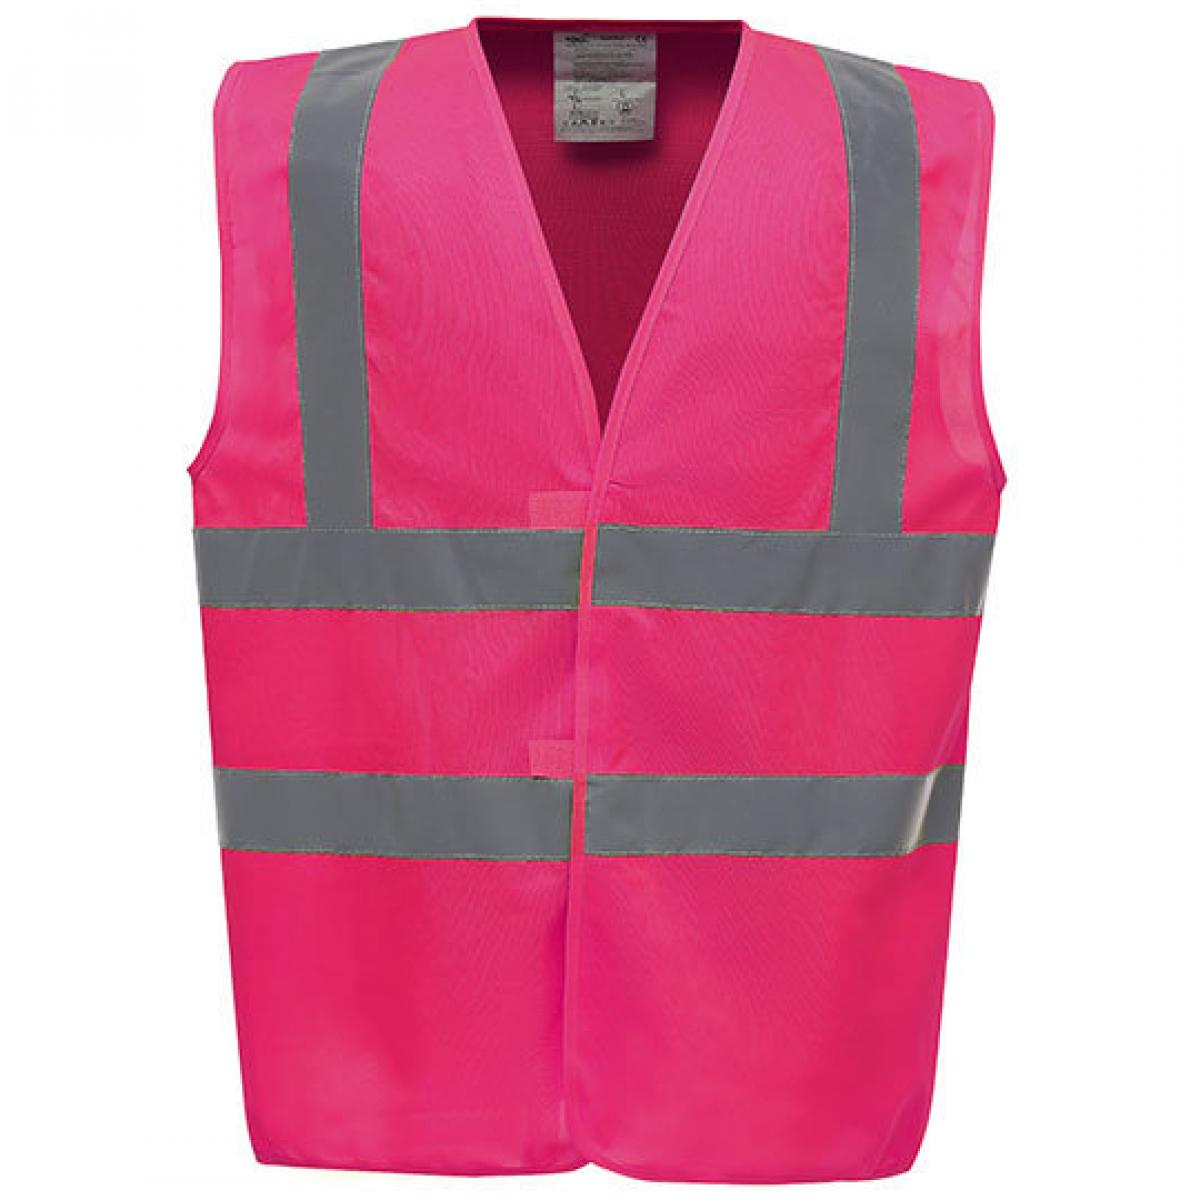 Hersteller: YOKO Herstellernummer: HVW100 Artikelbezeichnung: Sicherheitsweste High Visibility 2 Bands & Braces Waistcoat Farbe: Pink